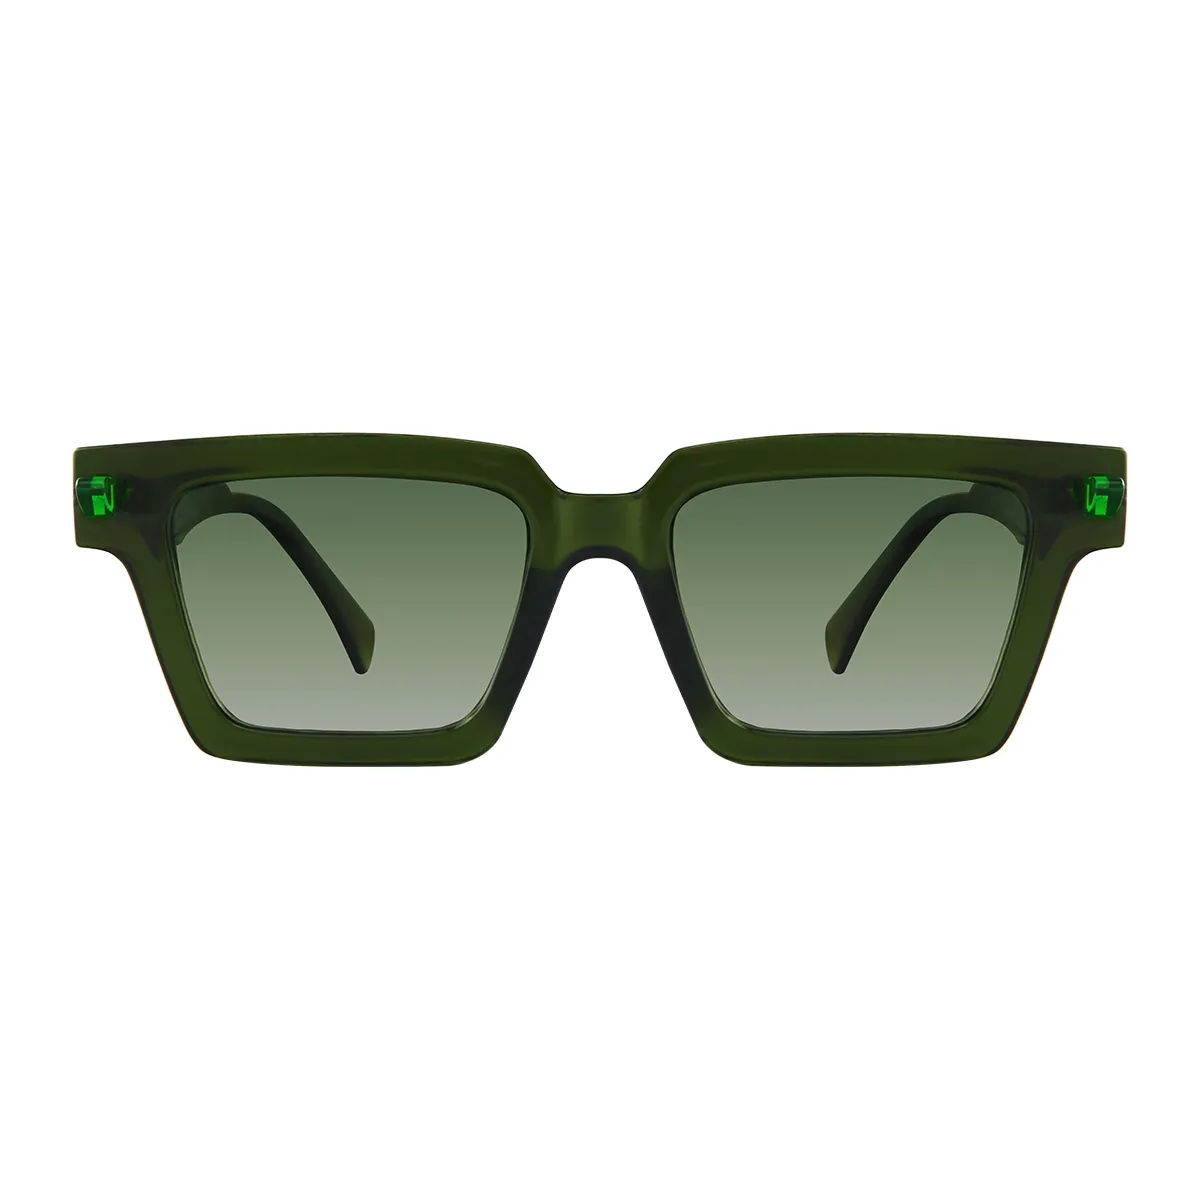 Sage - glasses Green Sunglasses for Men & Women